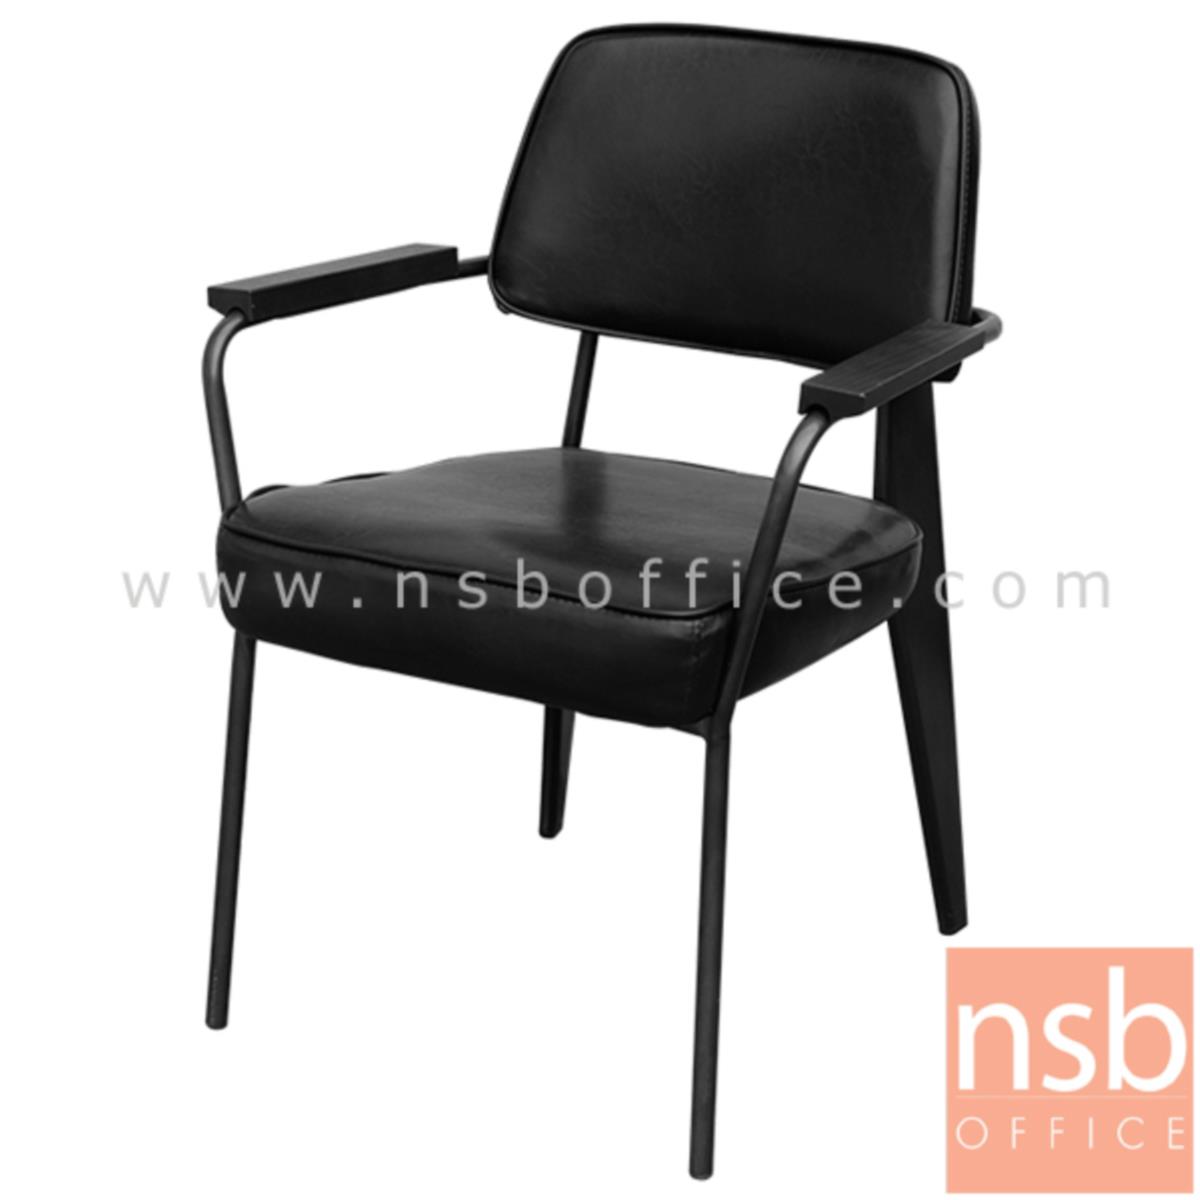 B29A275:เก้าอี้โมเดิร์นหนัง PU รุ่น NPT-29124 ขนาด 61W cm. โครงขาเหล็กพ่นสีดำ